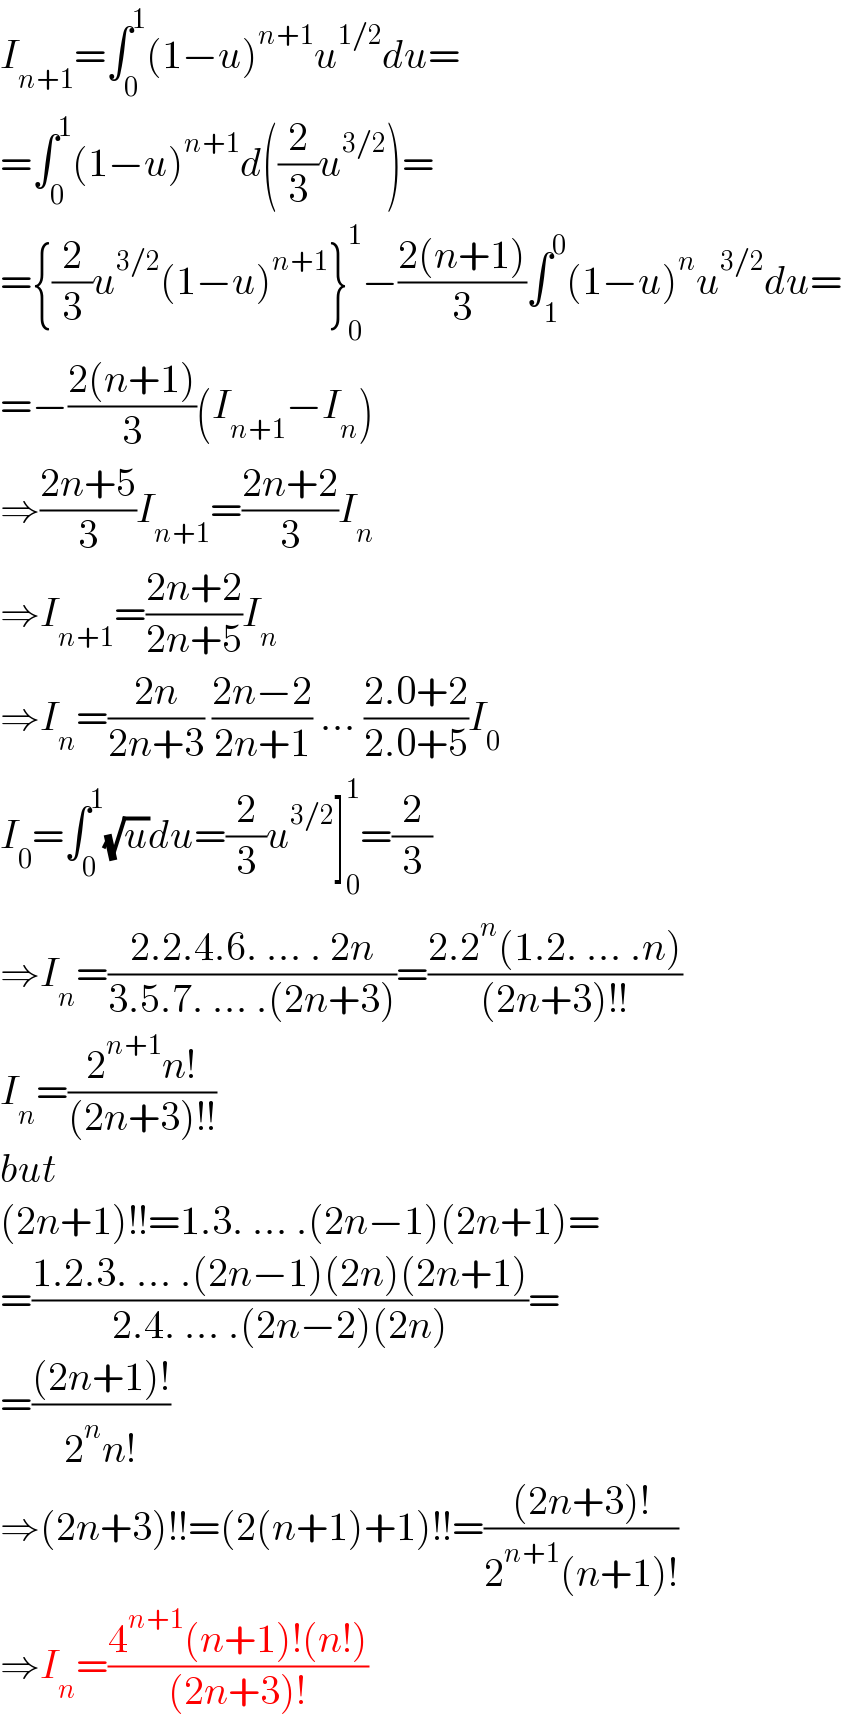 I_(n+1) =∫_0 ^1 (1−u)^(n+1) u^(1/2) du=  =∫_0 ^1 (1−u)^(n+1) d((2/3)u^(3/2) )=  ={(2/3)u^(3/2) (1−u)^(n+1) }_0 ^1 −((2(n+1))/3)∫_1 ^0 (1−u)^n u^(3/2) du=  =−((2(n+1))/3)(I_(n+1) −I_n )  ⇒((2n+5)/3)I_(n+1) =((2n+2)/3)I_n   ⇒I_(n+1) =((2n+2)/(2n+5))I_n   ⇒I_n =((2n)/(2n+3)) ((2n−2)/(2n+1)) ... ((2.0+2)/(2.0+5))I_0   I_0 =∫_0 ^1 (√u)du=(2/3)u^(3/2) ]_0 ^1 =(2/3)  ⇒I_n =((2.2.4.6. ... . 2n)/(3.5.7. ... .(2n+3)))=((2.2^n (1.2. ... .n))/((2n+3)!!))  I_n =((2^(n+1) n!)/((2n+3)!!))  but  (2n+1)!!=1.3. ... .(2n−1)(2n+1)=  =((1.2.3. ... .(2n−1)(2n)(2n+1))/(2.4. ... .(2n−2)(2n)))=  =(((2n+1)!)/(2^n n!))  ⇒(2n+3)!!=(2(n+1)+1)!!=(((2n+3)!)/(2^(n+1) (n+1)!))  ⇒I_n =((4^(n+1) (n+1)!(n!))/((2n+3)!))  